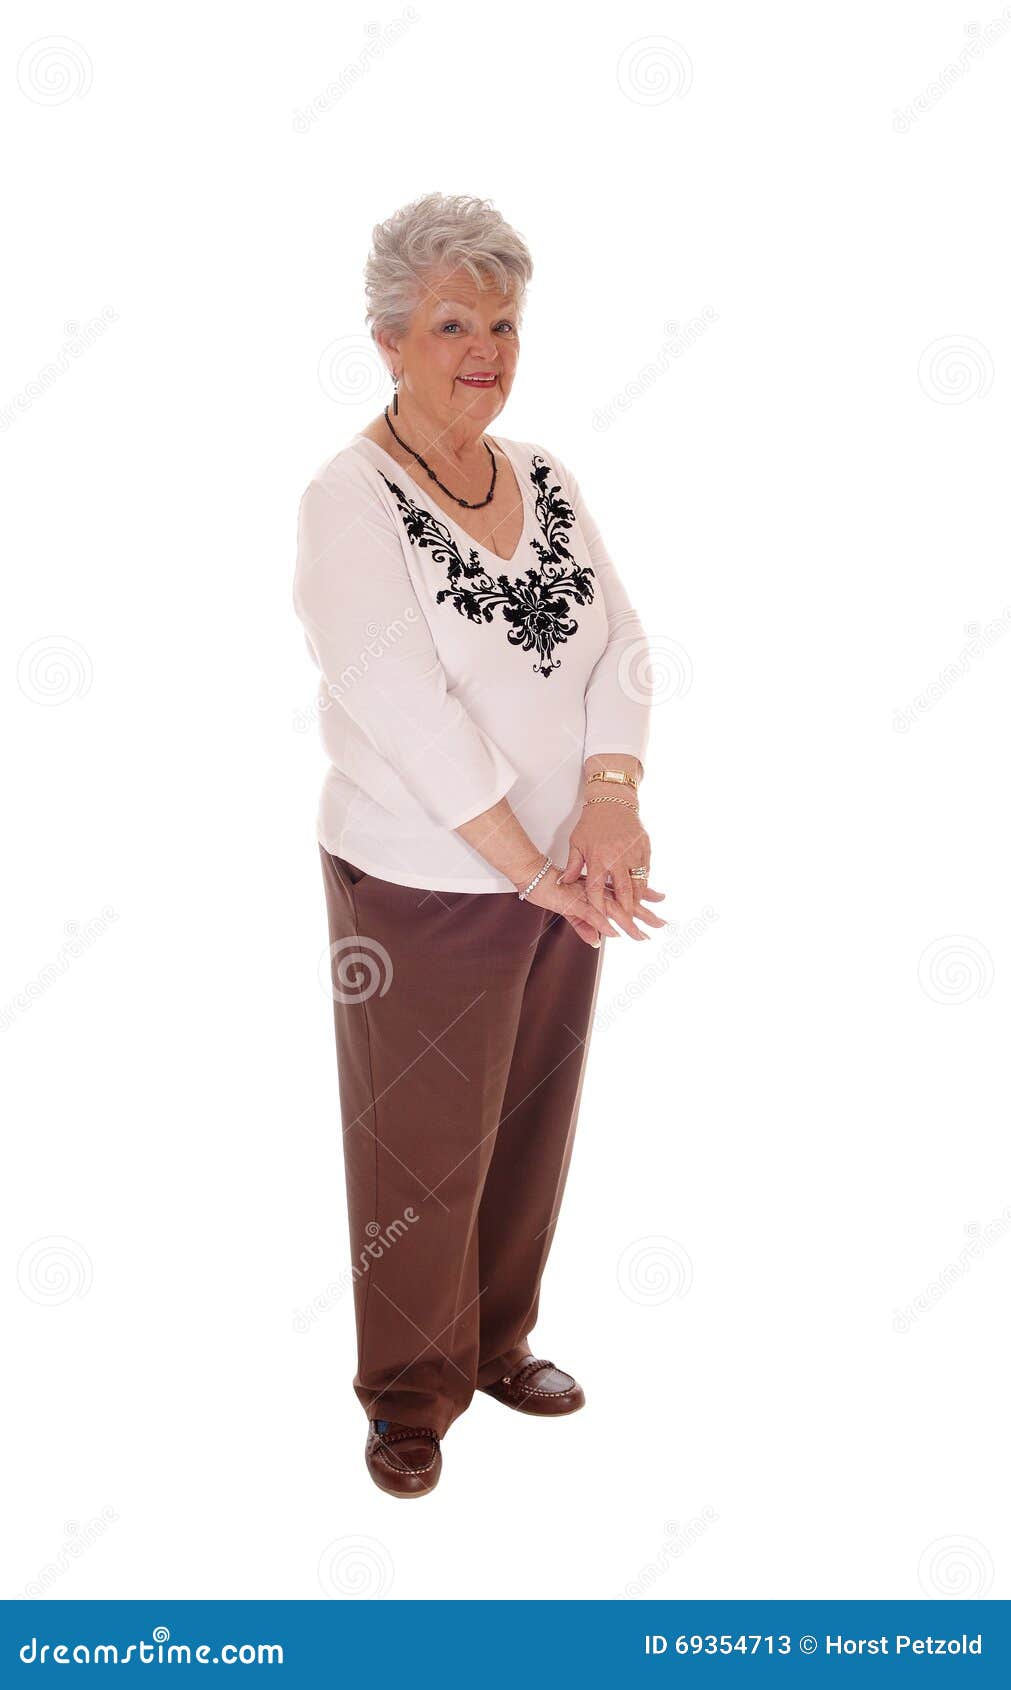 Elderly Woman Standing Full Body. Stock Image - Image of full